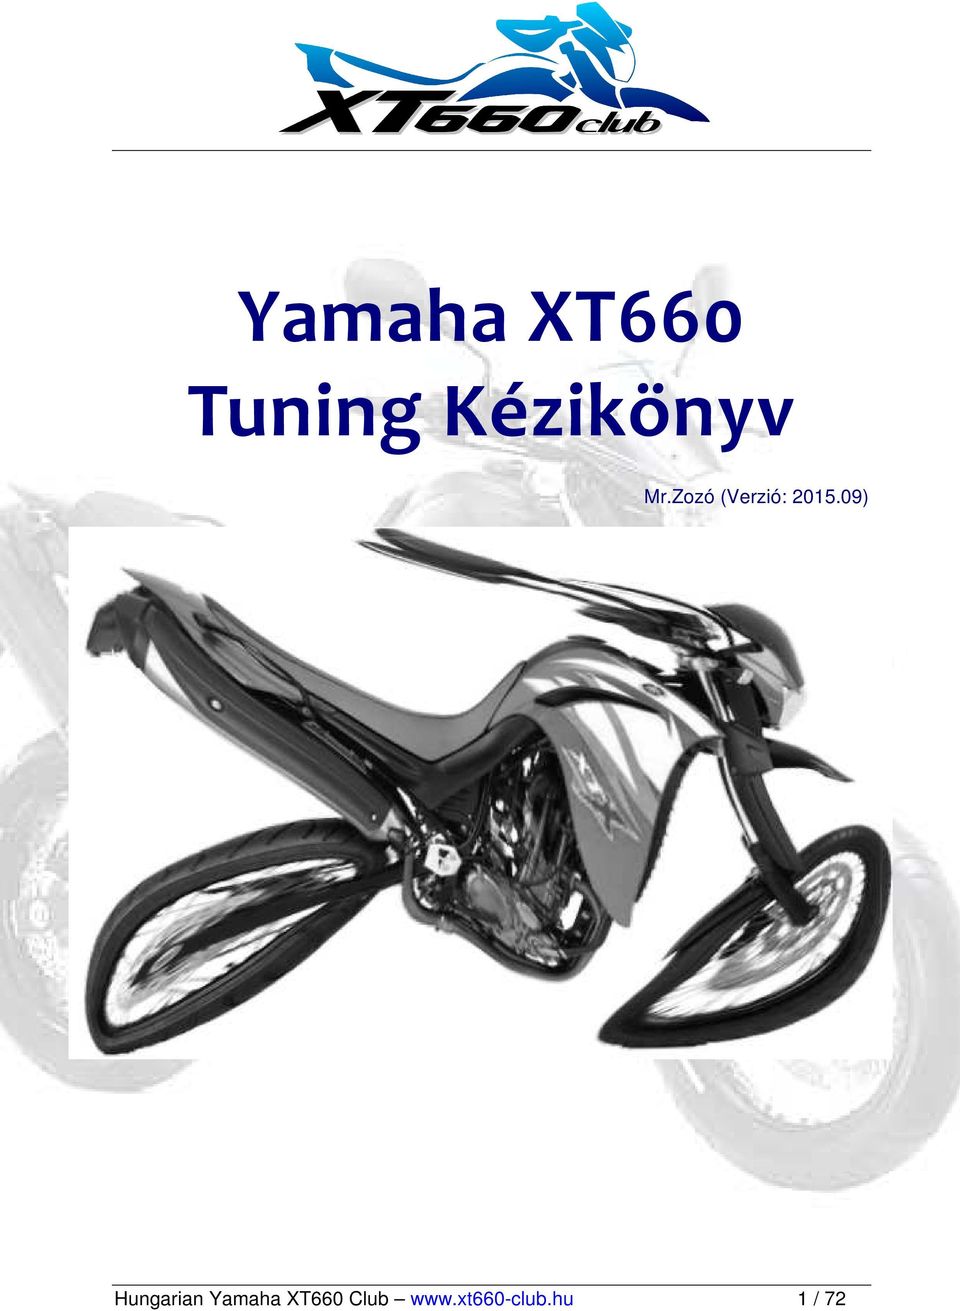 Yamaha XT660 Tuning Kézikönyv - PDF Ingyenes letöltés